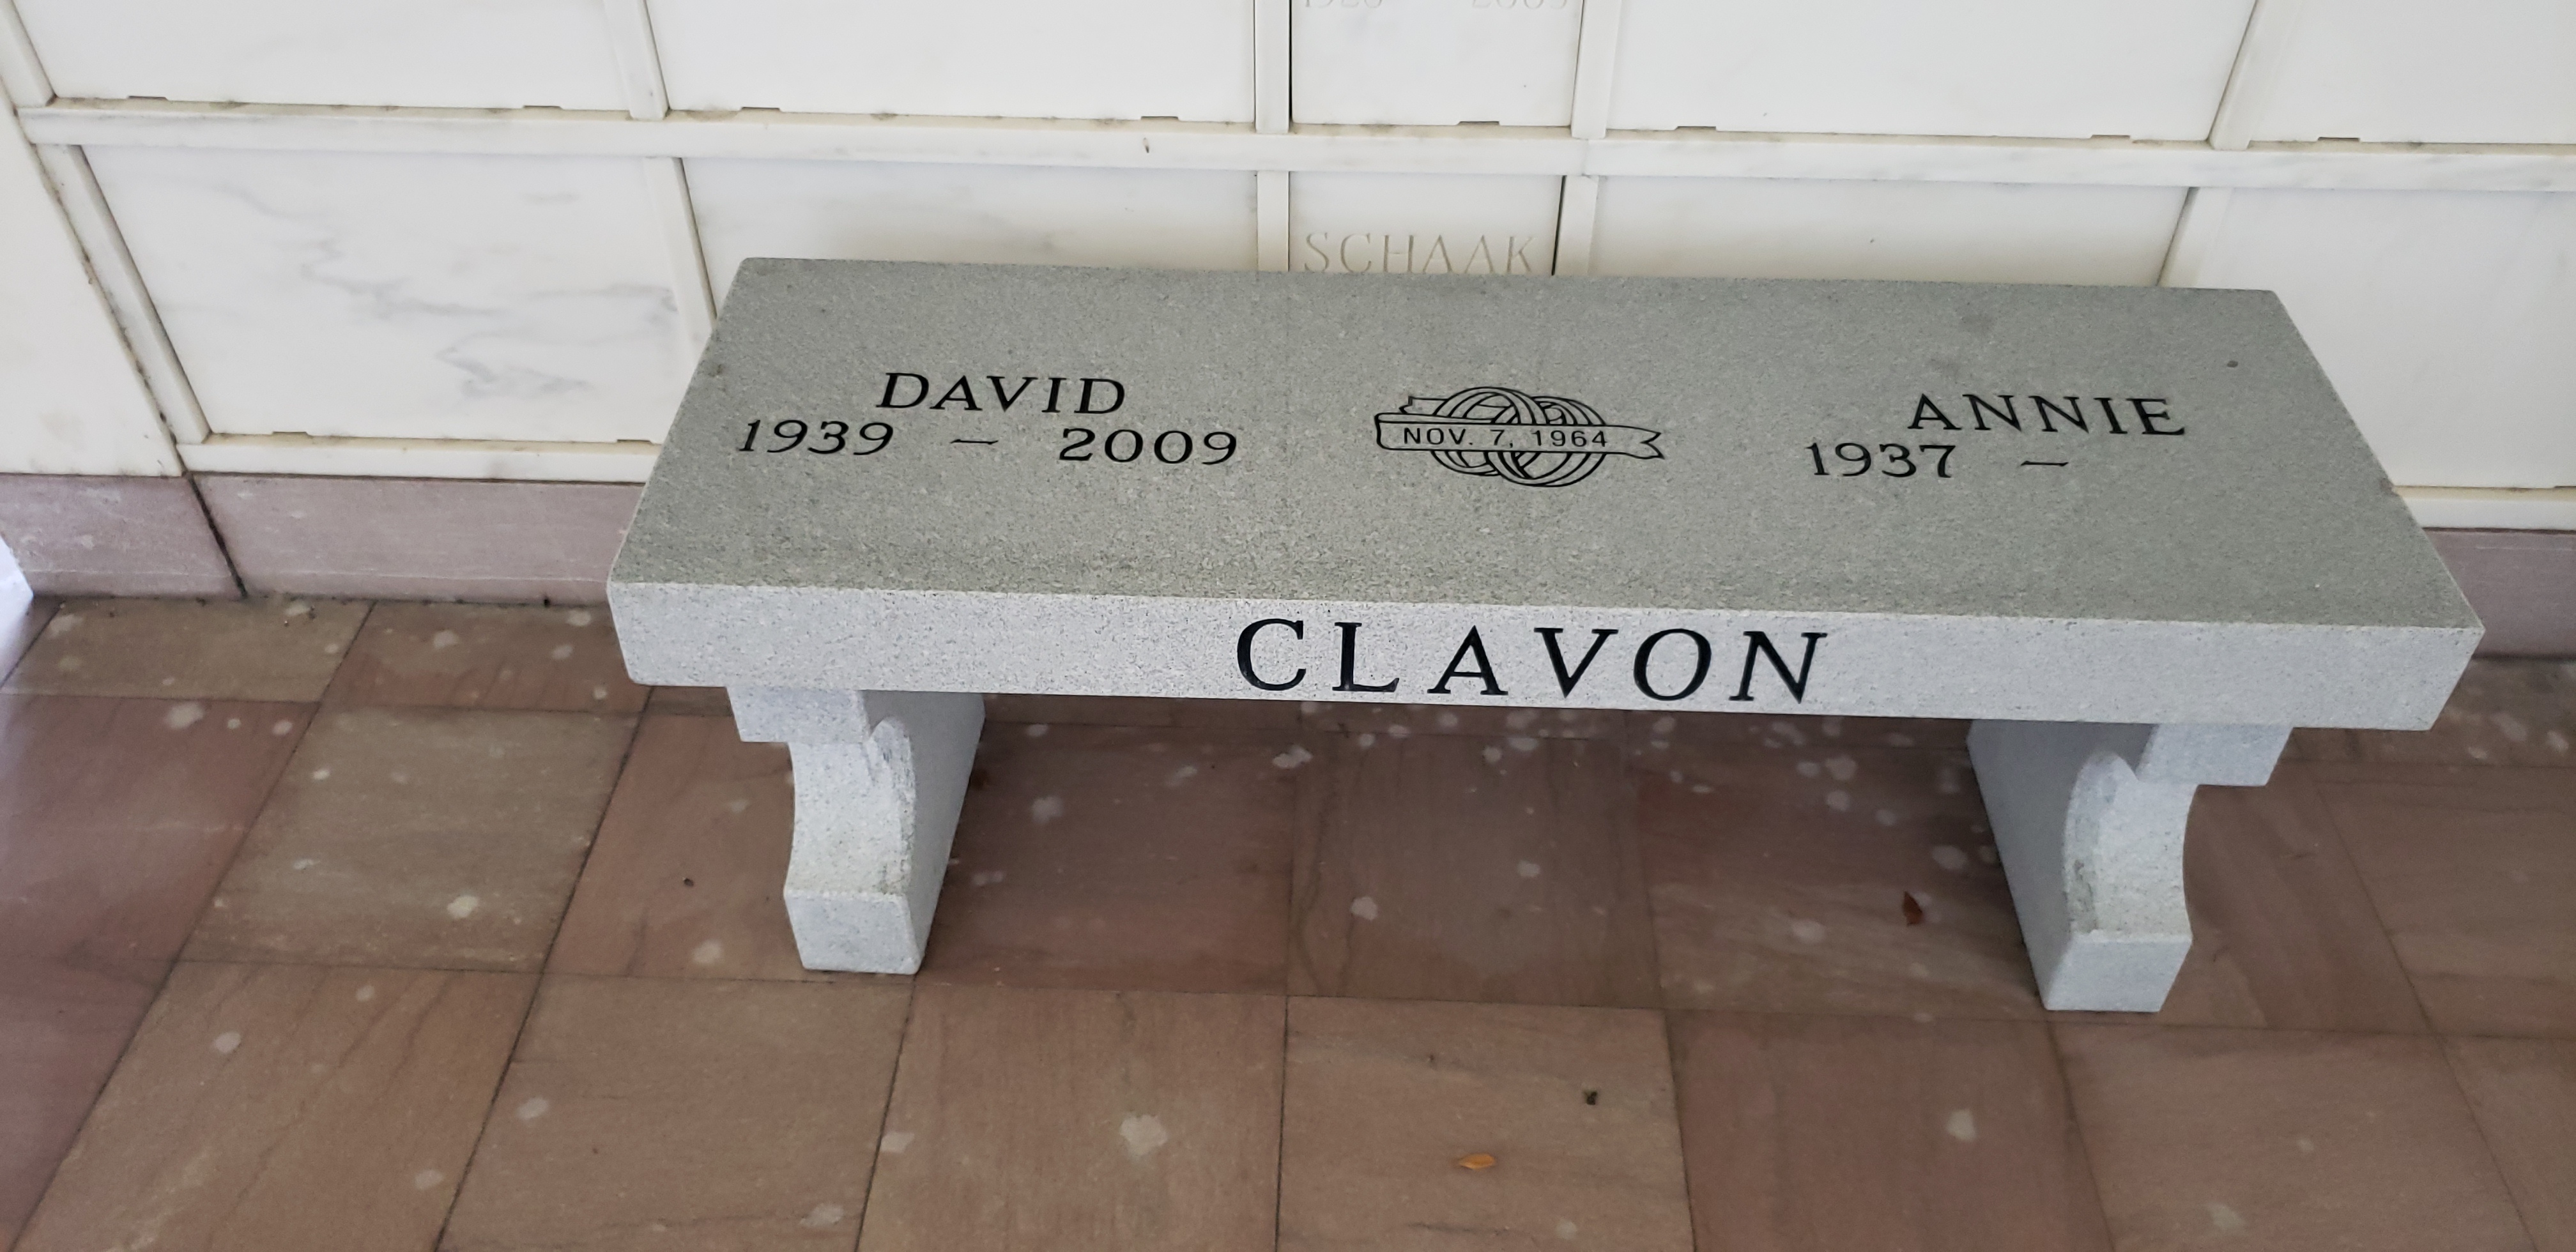 David Clavon